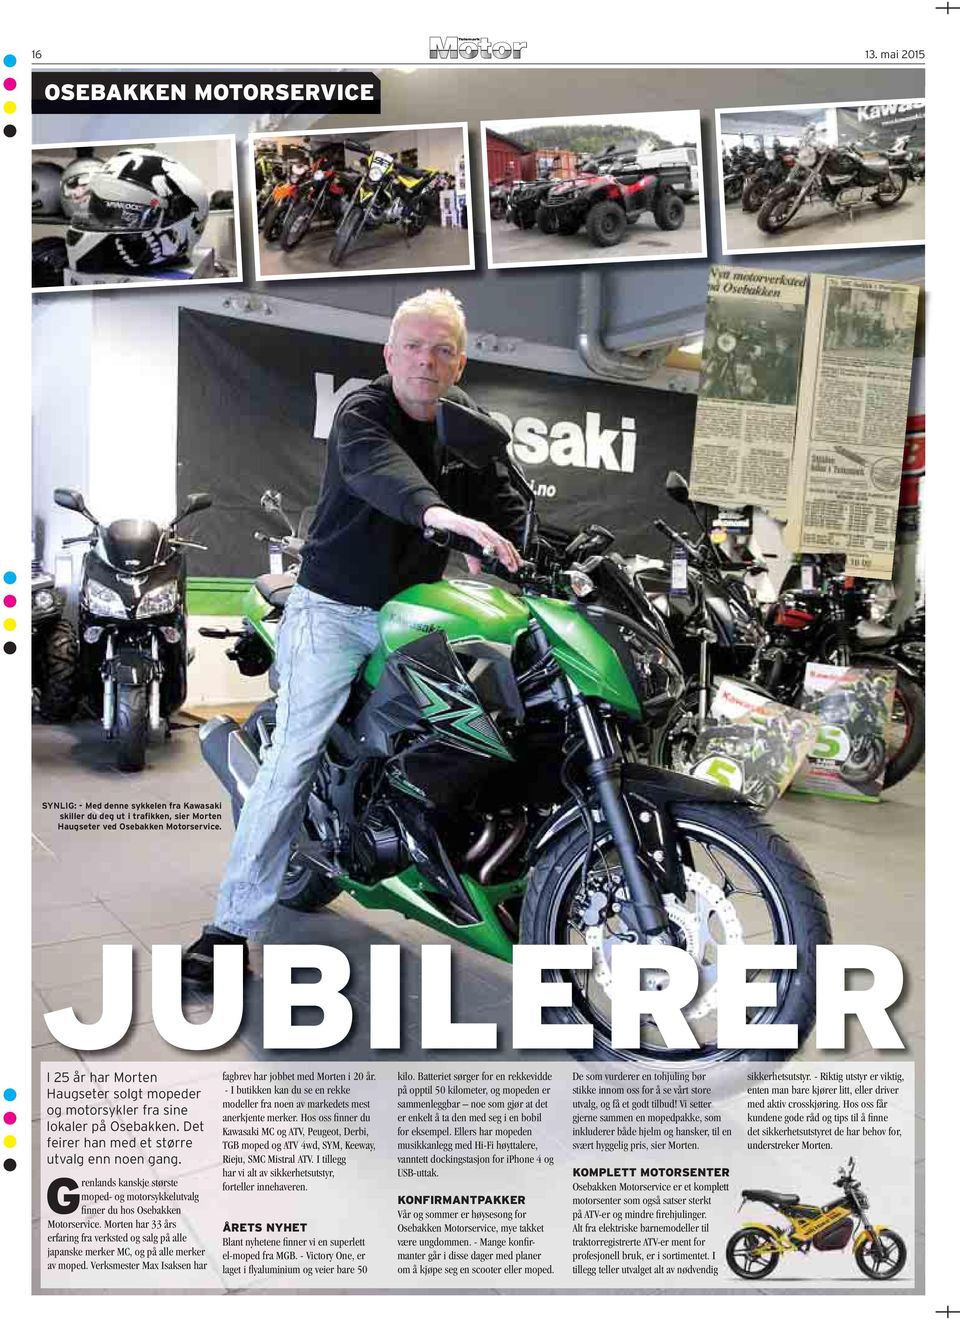 Grenlands kanskje største moped- og motorsykkelutvalg fi nner du hos Osebakken Motorservice. Morten har 33 års erfaring fra verksted og salg på alle japanske merker MC, og på alle merker av moped.